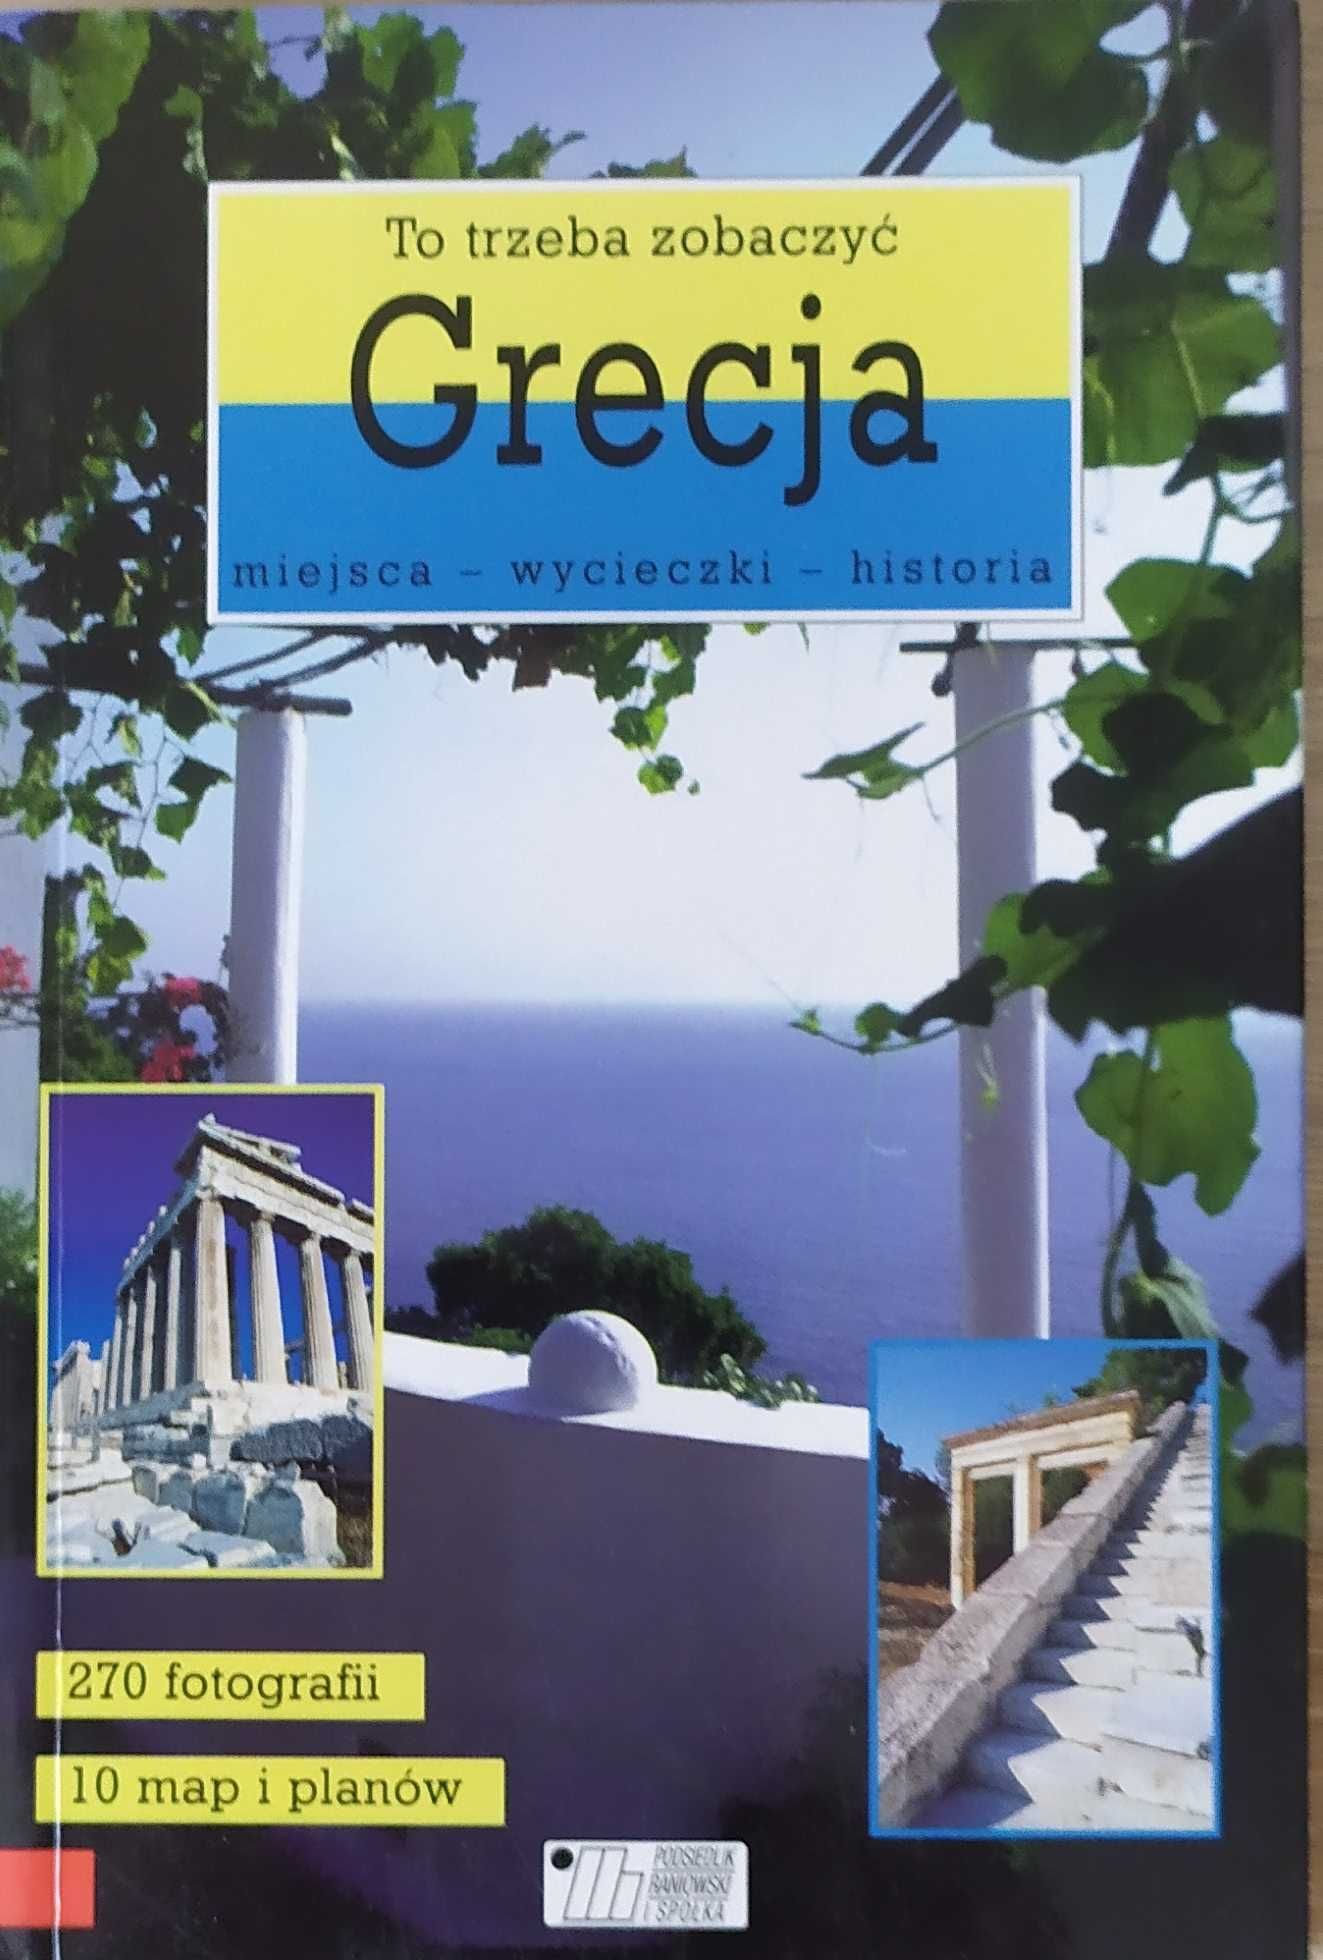 Grecja dwa przewodniki barwne ilustracje komplet